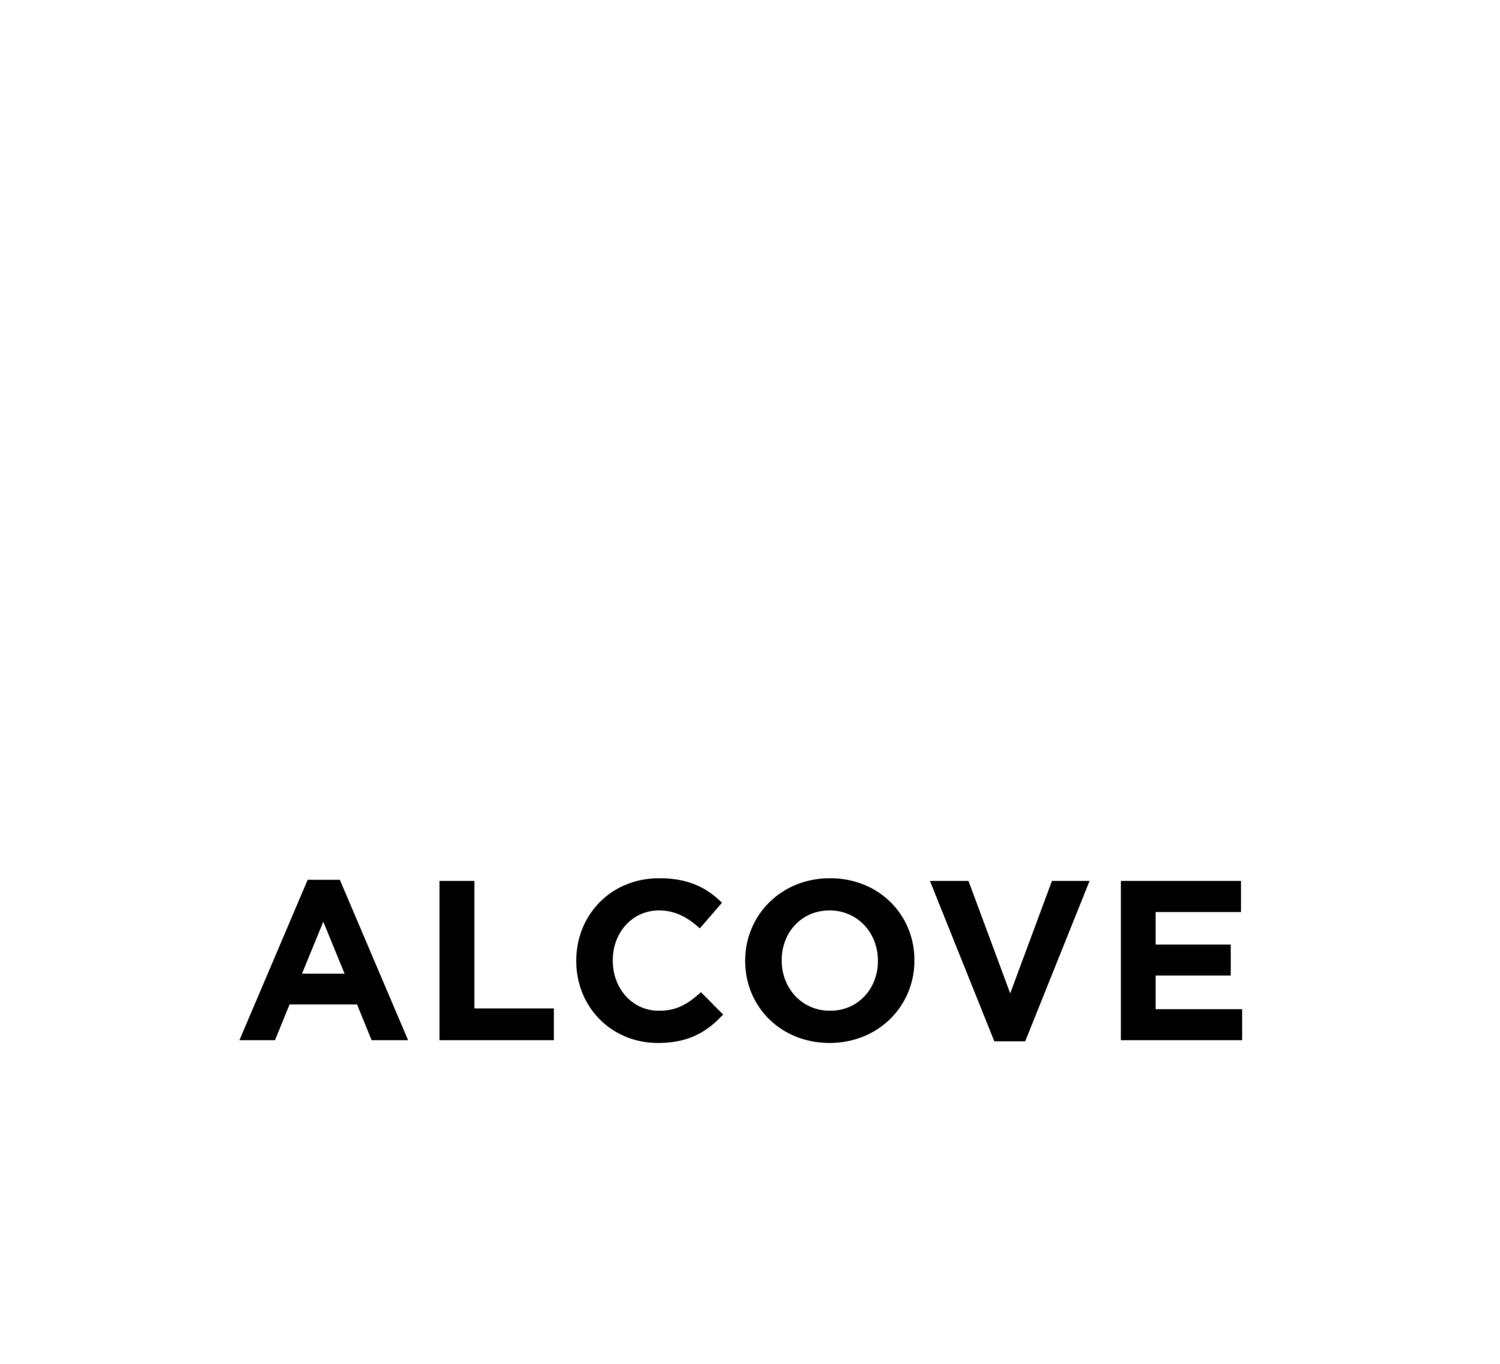 THE ALCOVE